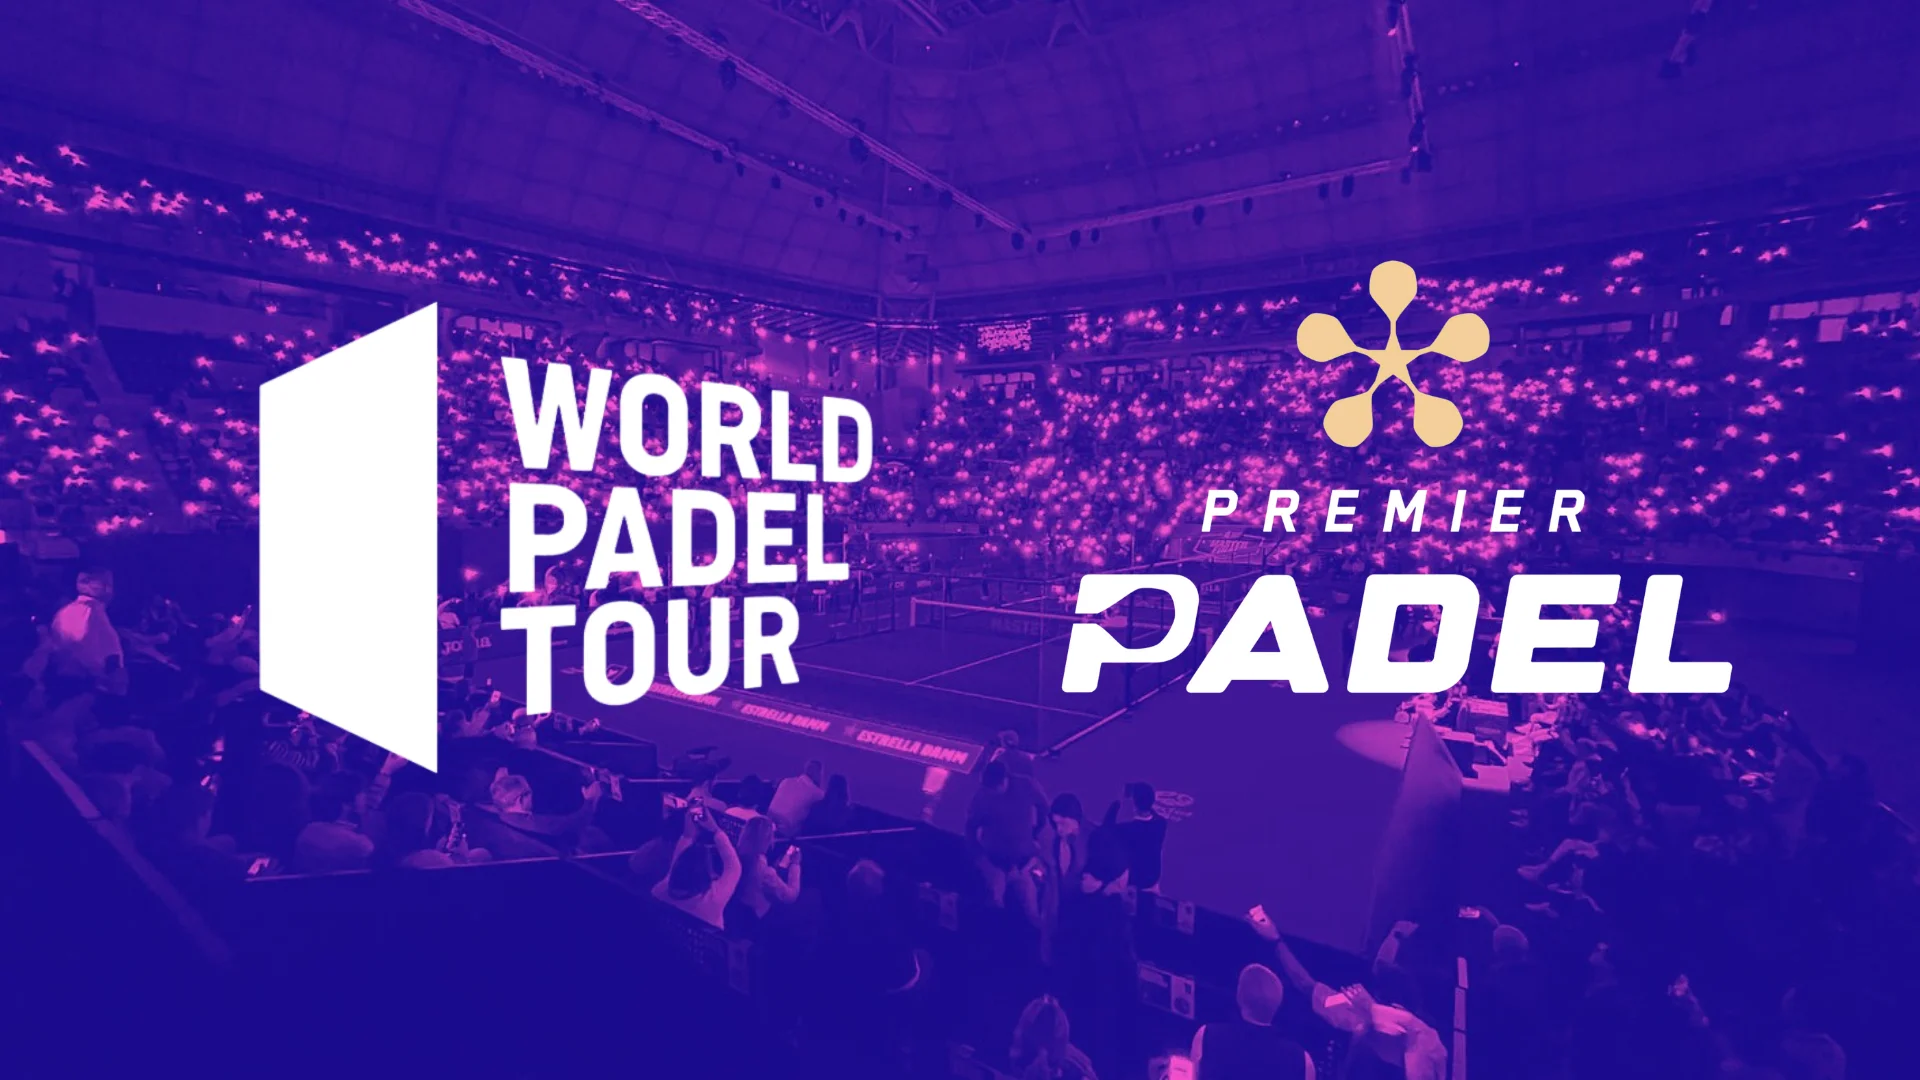 Le World Padel Tour et Premier Padel eles podem realmente ser um?